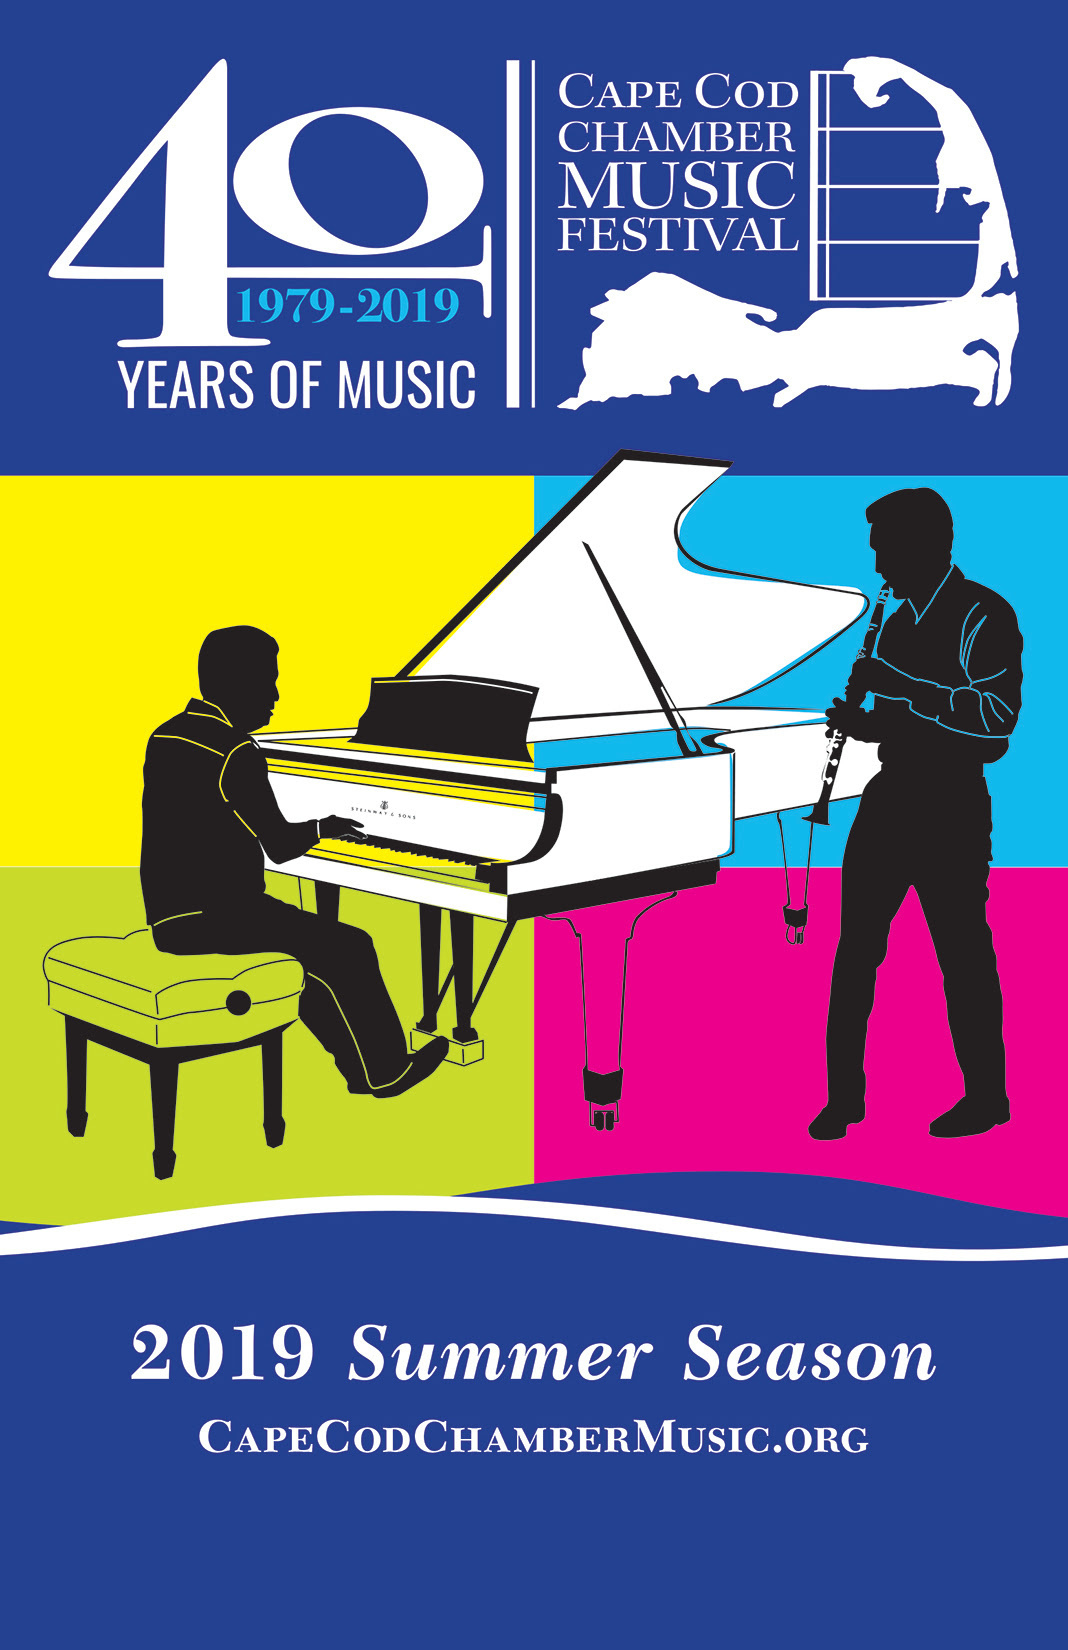 Cape Cod Chamber Music Festival Launches 40th Anniversary Season